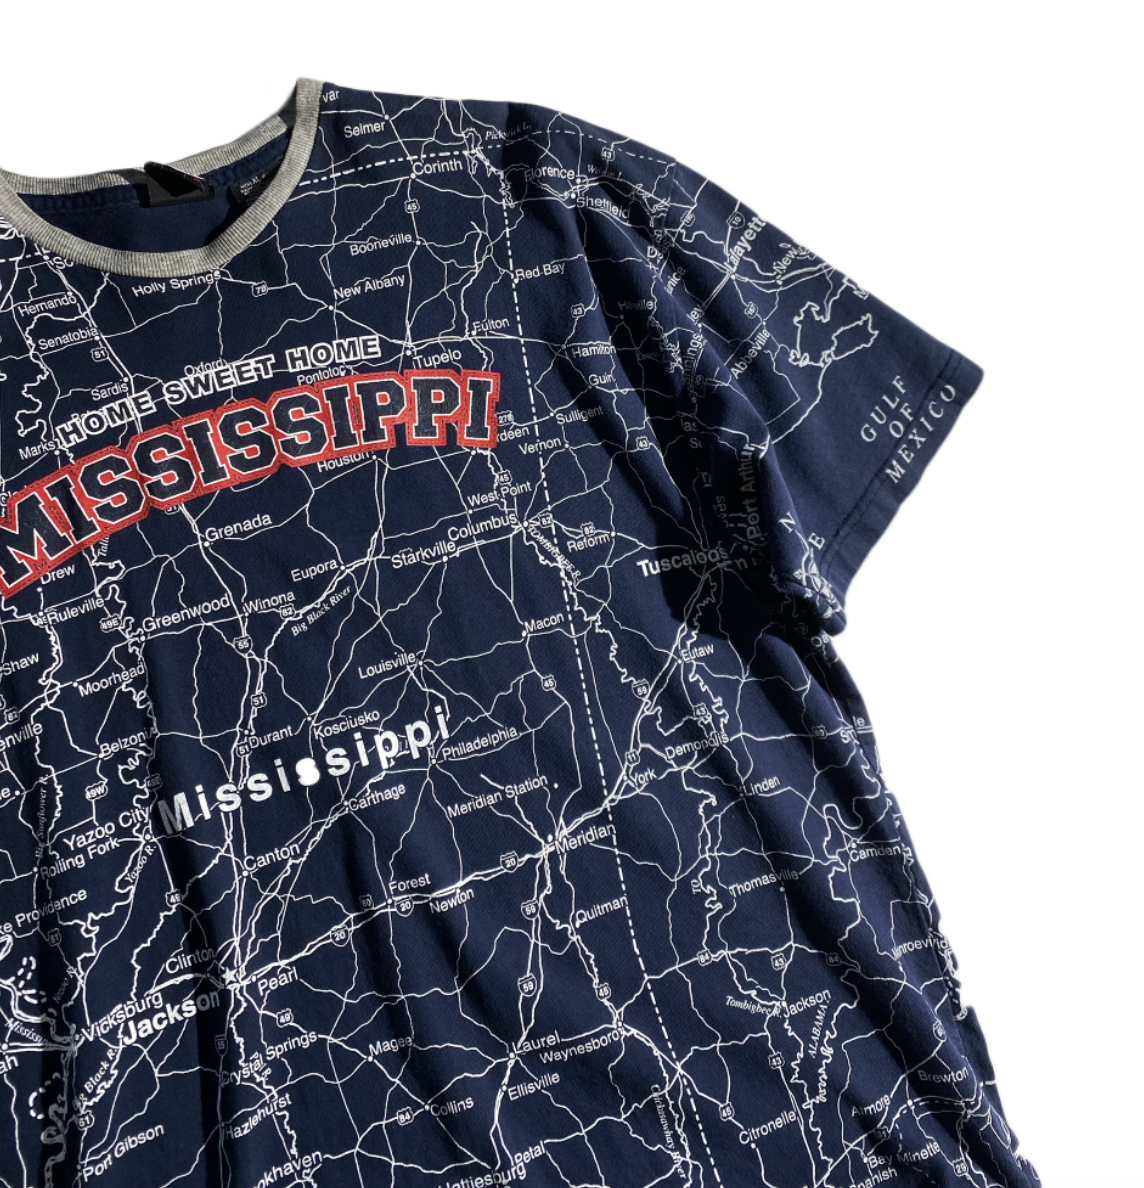 Vintage Mississippi Map T-Shirt